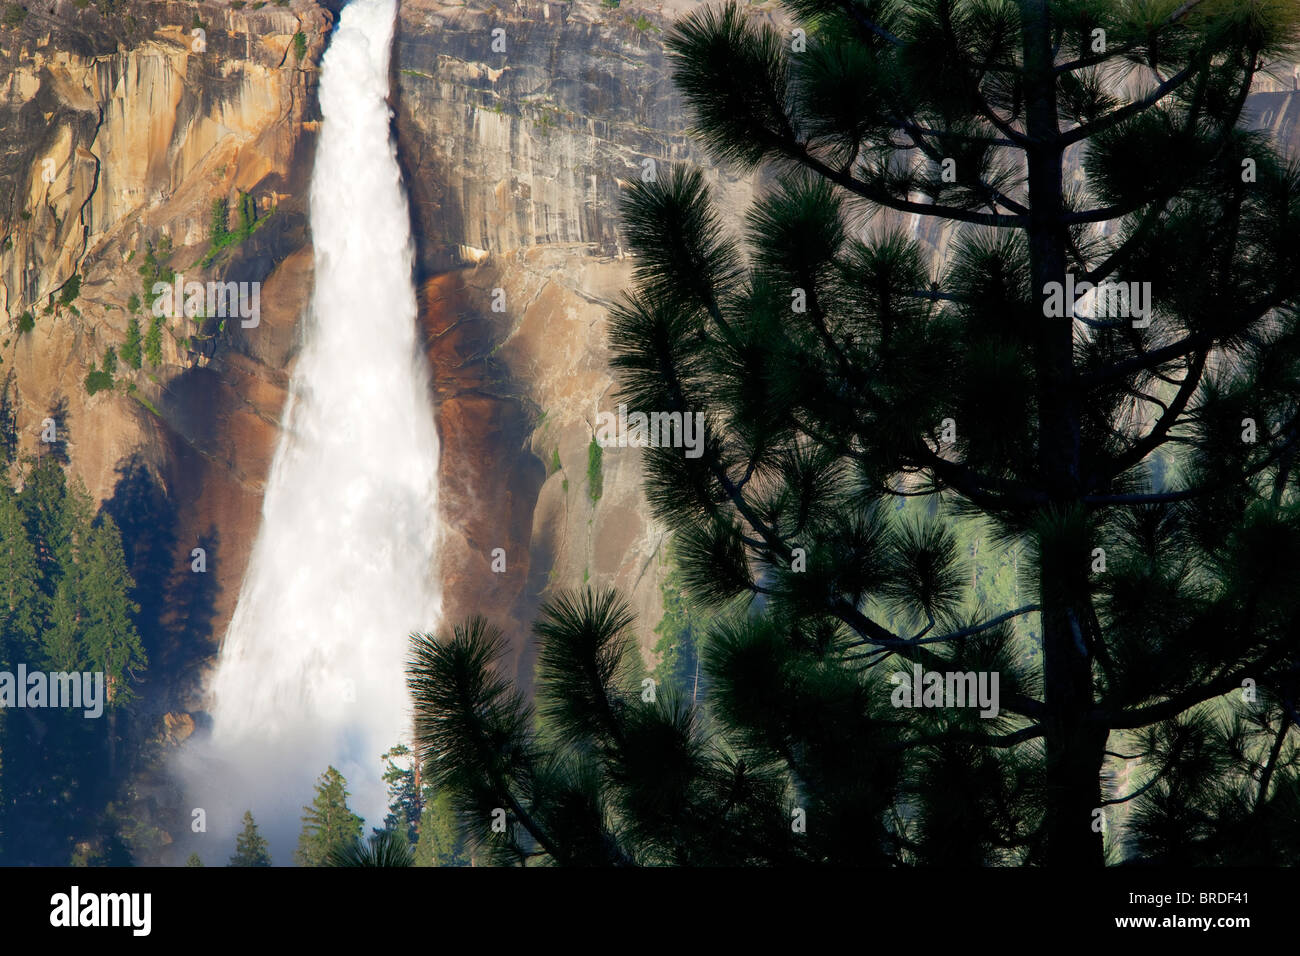 Nevada Falls et de pins vu de Glacier Point. Yosemite National Park, Californie Banque D'Images